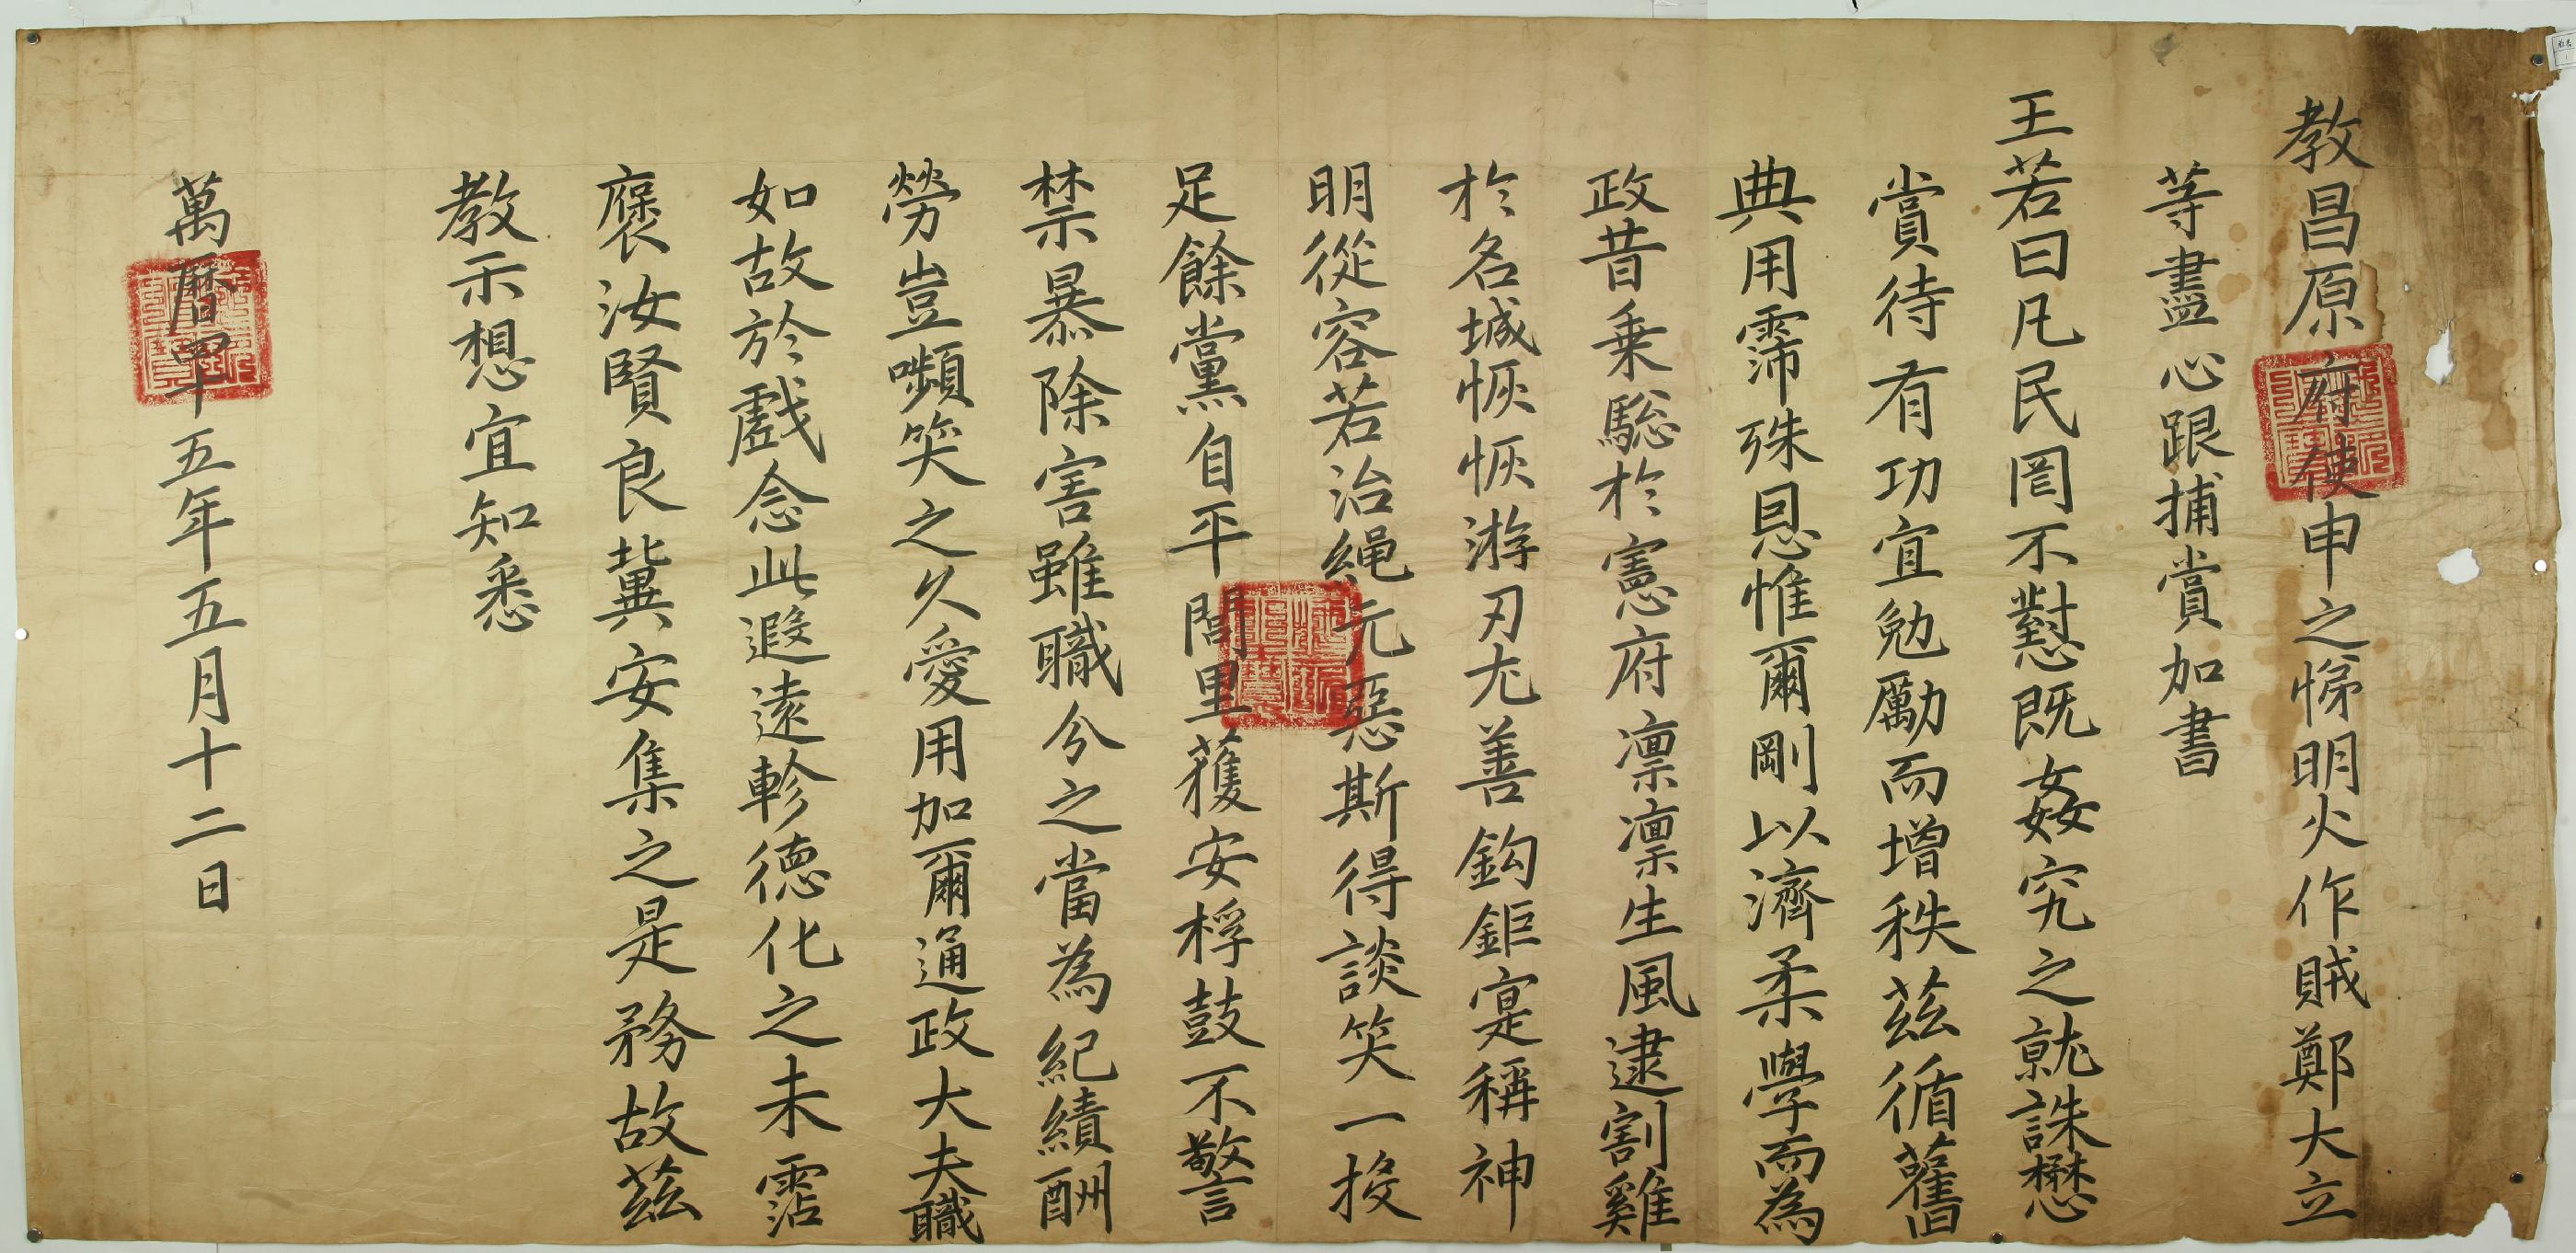 1617년에 선조가 명화적 정대립을 잡은 신지제에게 내린 교서